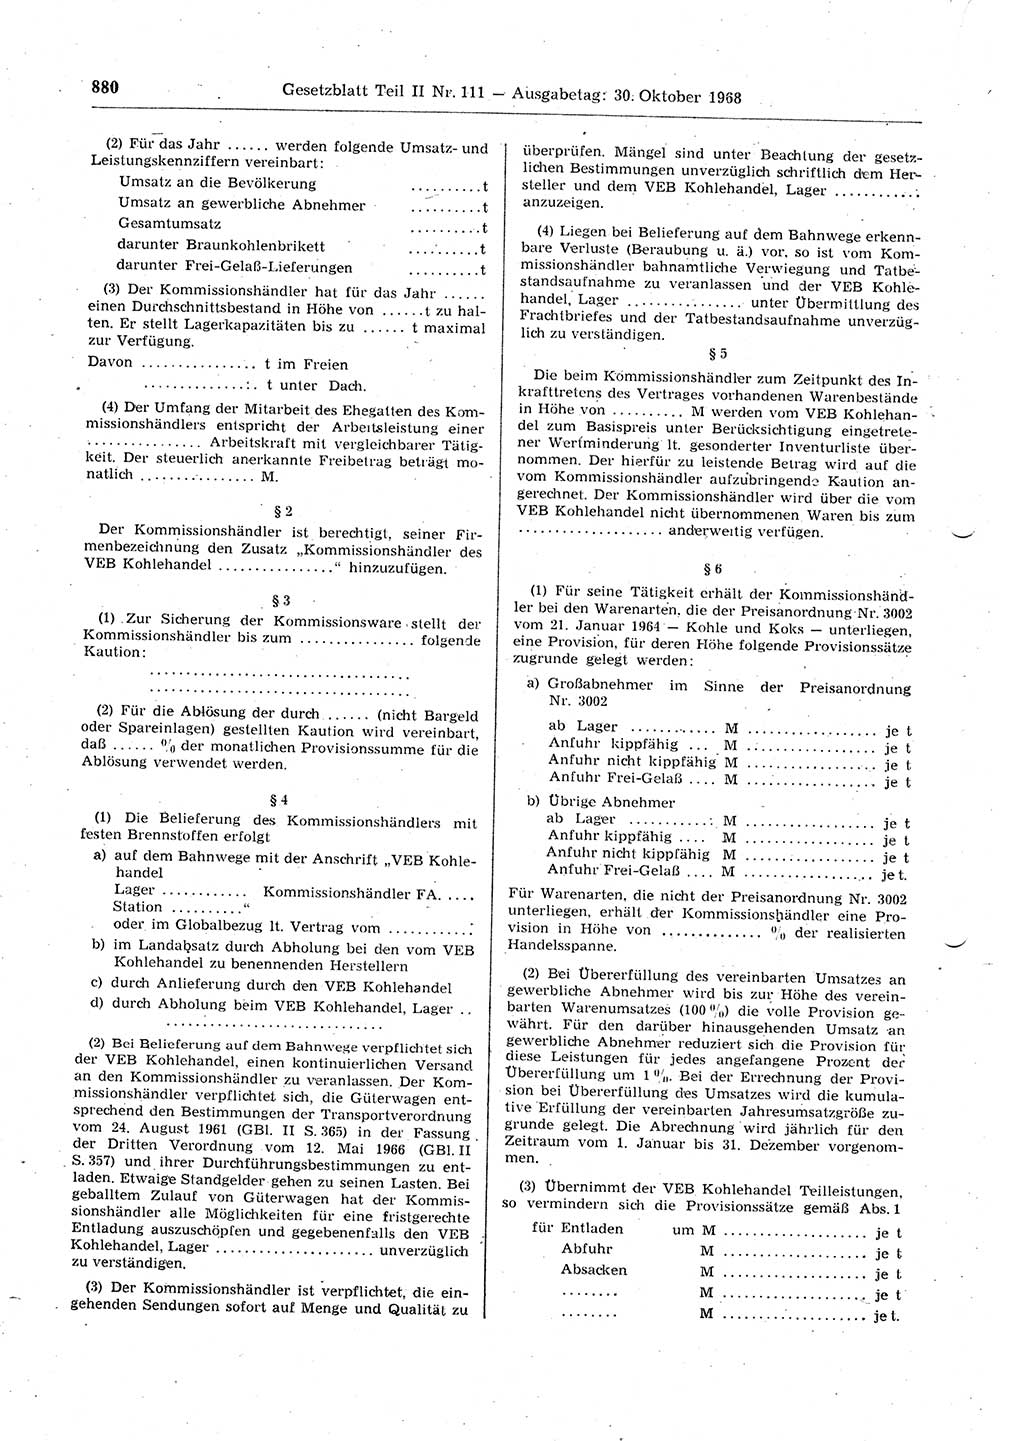 Gesetzblatt (GBl.) der Deutschen Demokratischen Republik (DDR) Teil ⅠⅠ 1968, Seite 880 (GBl. DDR ⅠⅠ 1968, S. 880)